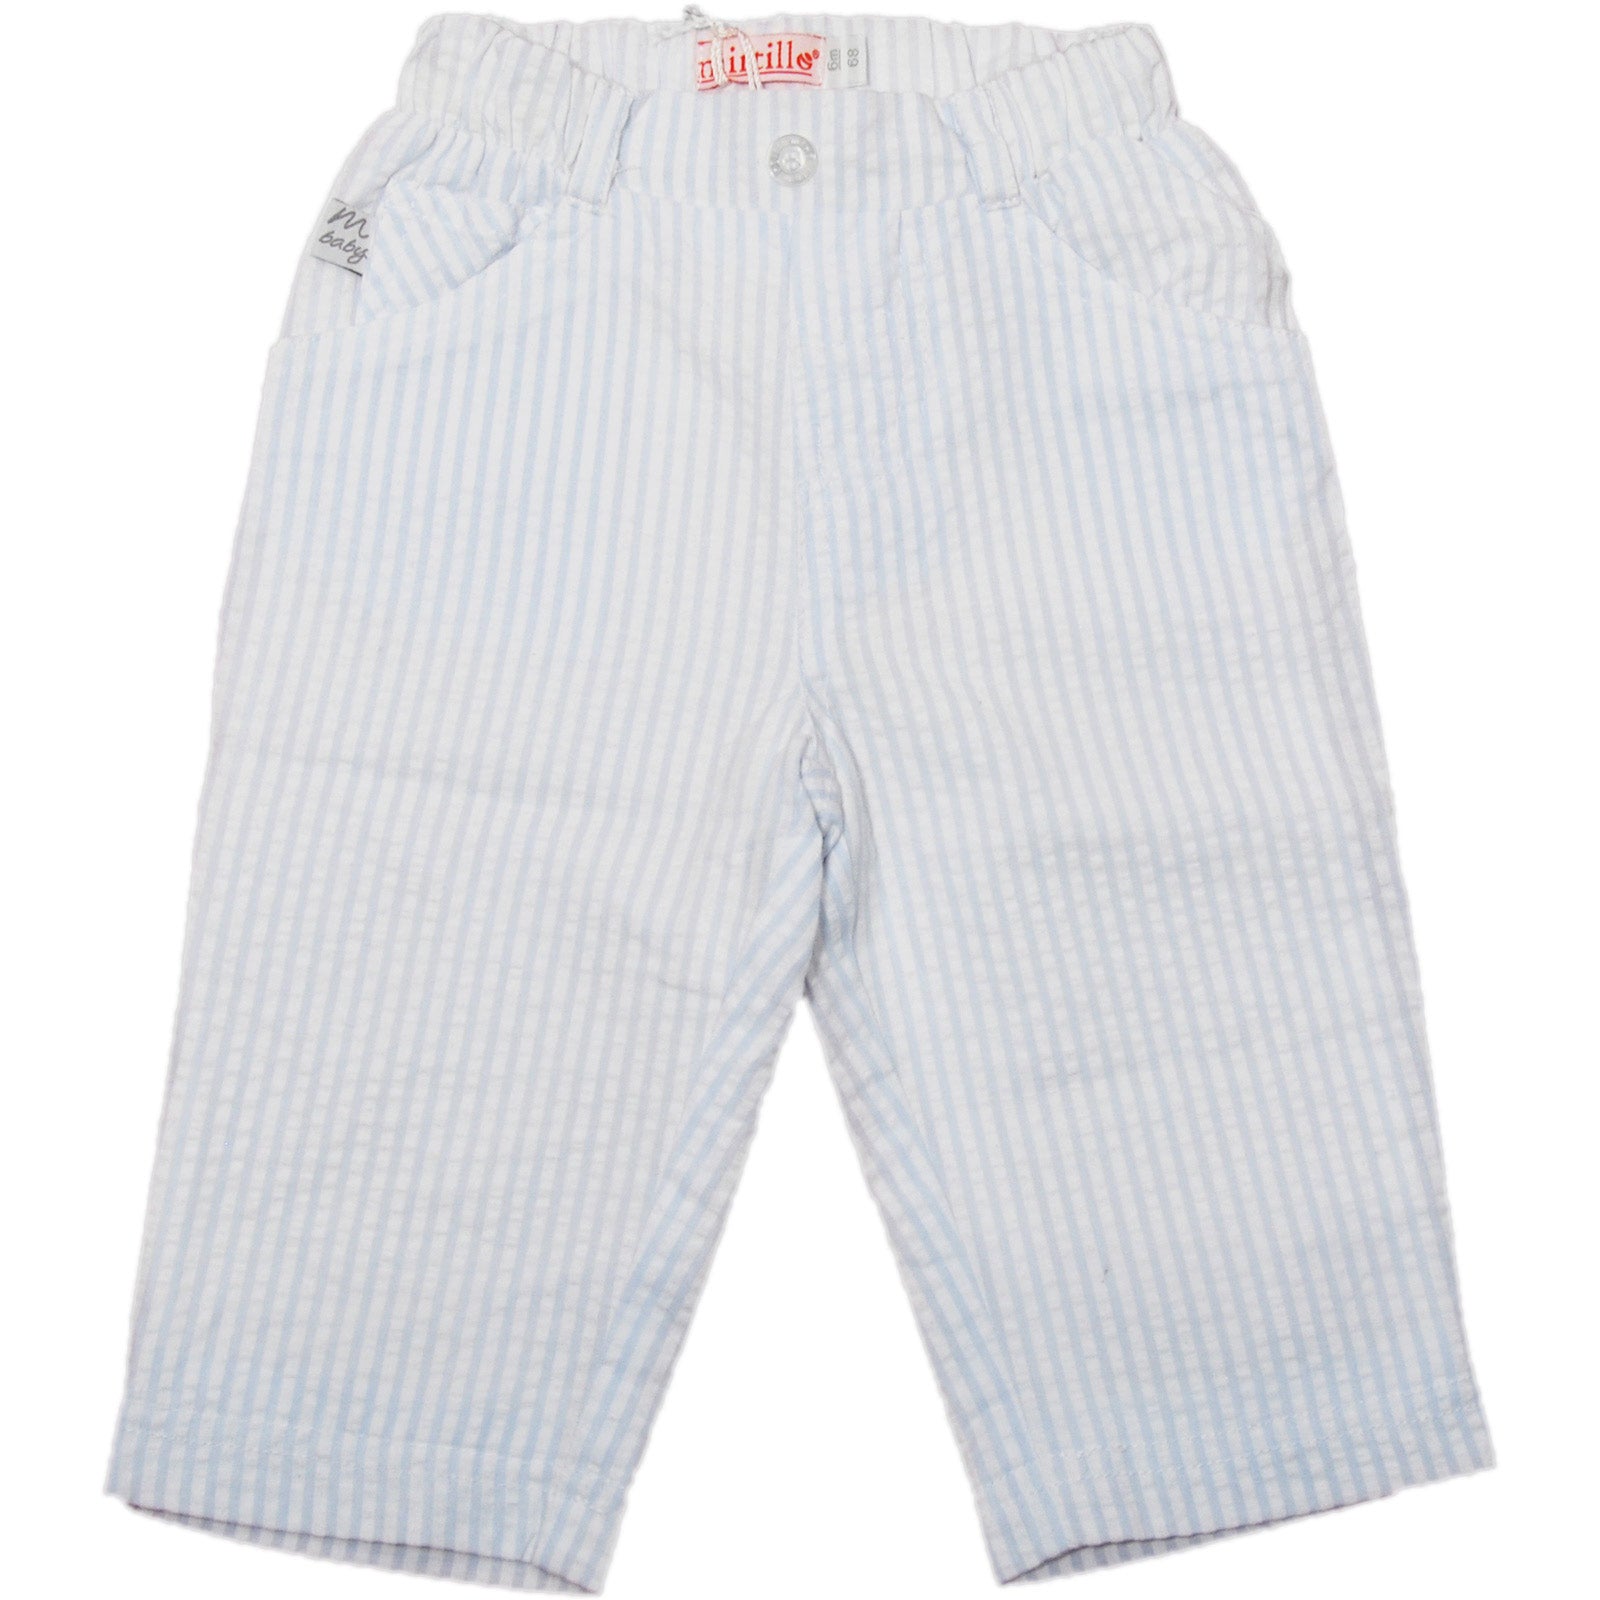 
  Pantalone dellla linea abbigliamento bambino Mirtillo a sacchetto in cotone rigatino, bianco e...